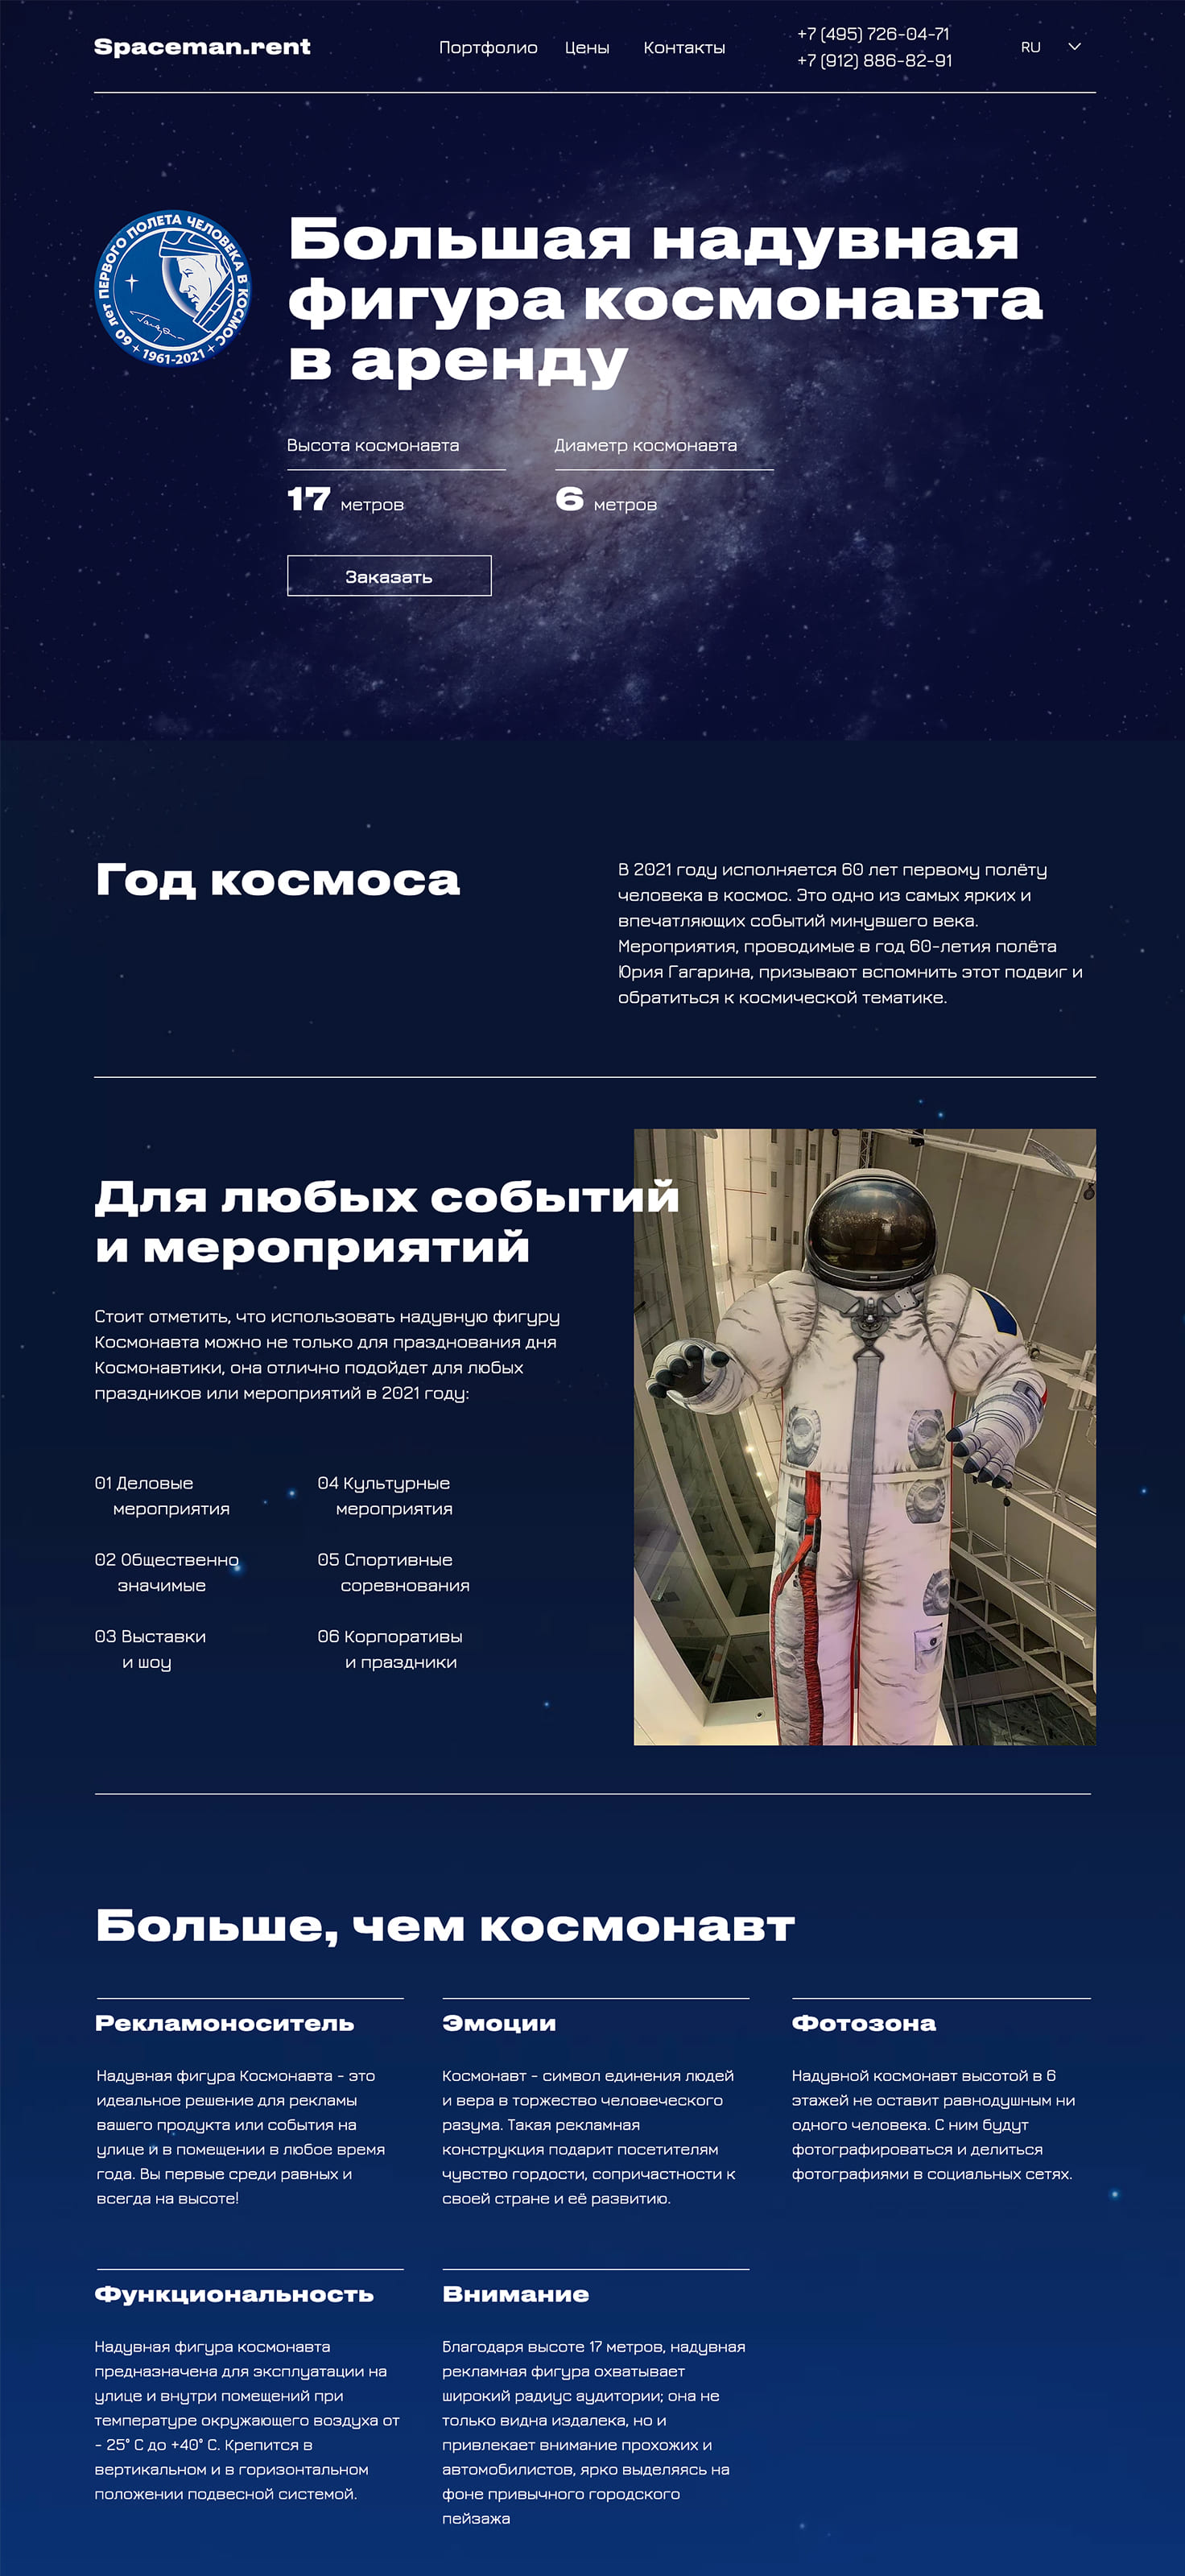 Сайт-визитка на 2 языках